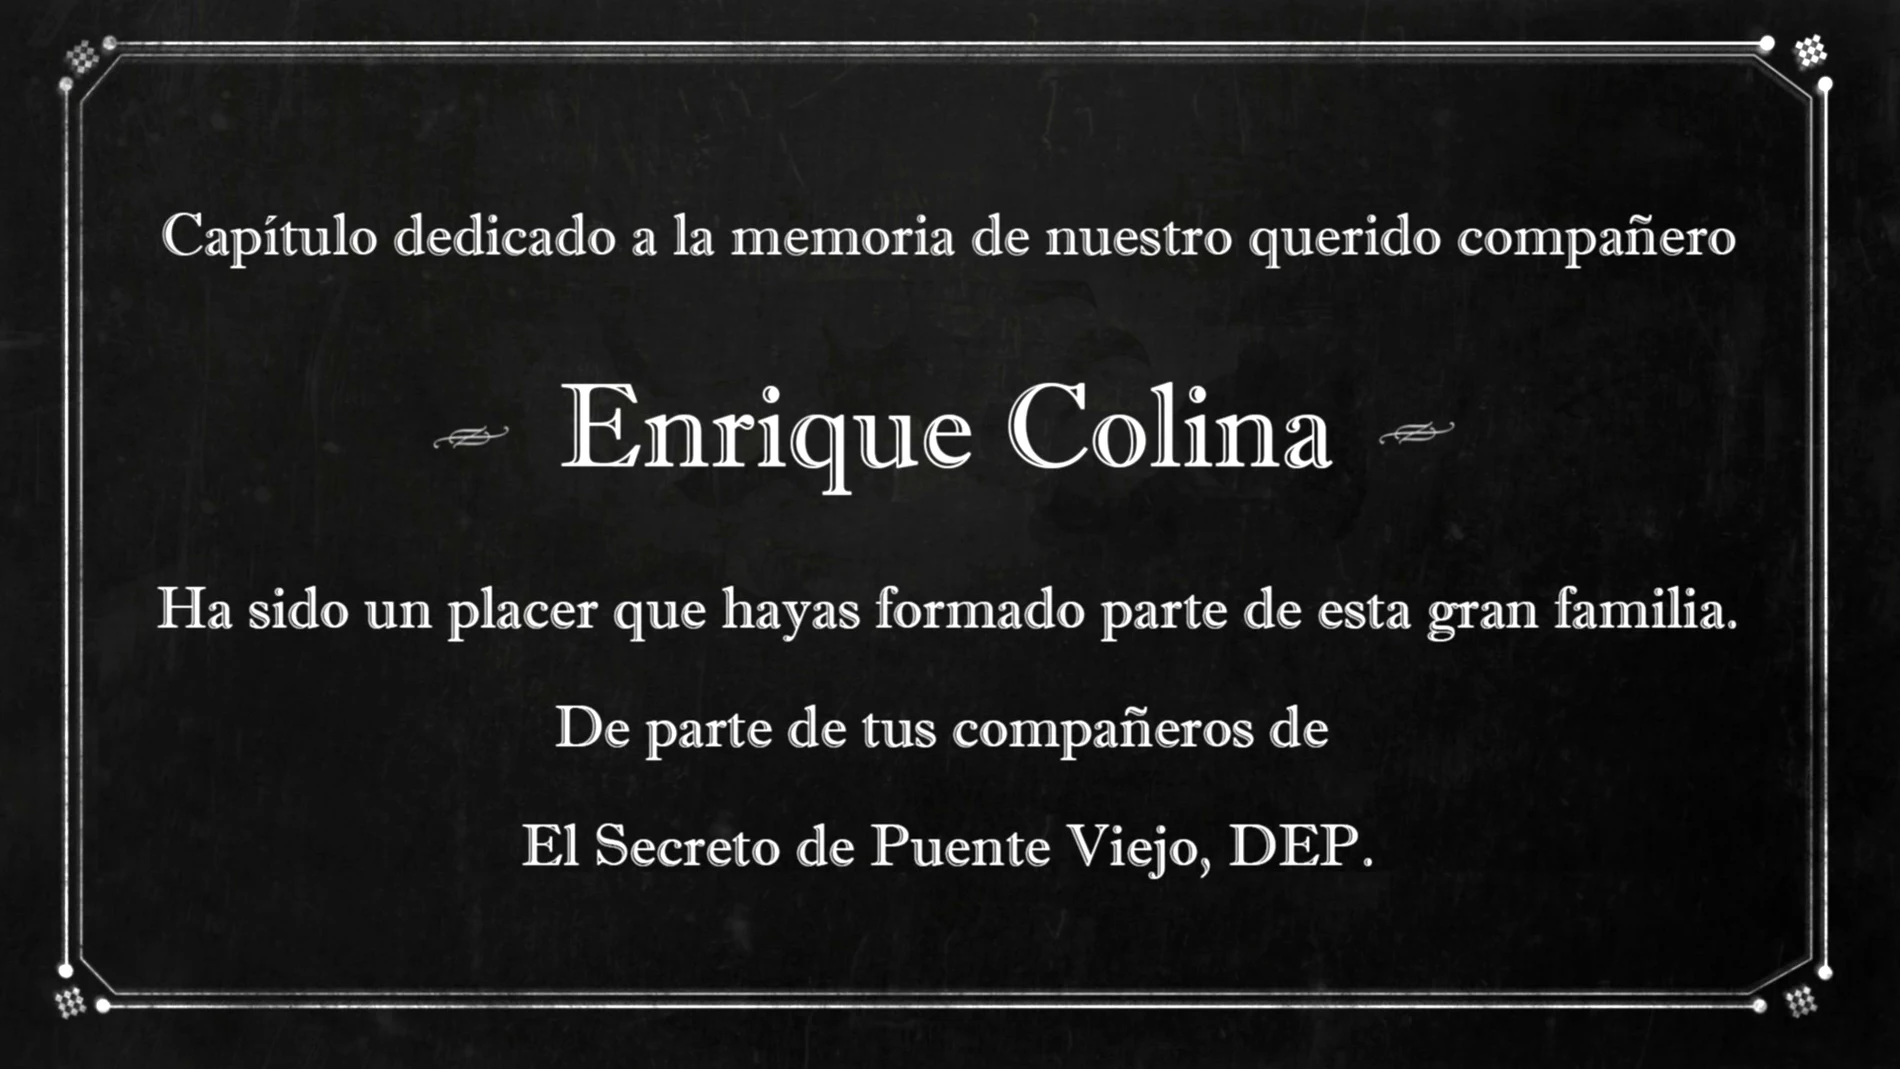 La bonita dedicatoria del equipo de 'El secreto de Puente Viejo' a Enrique Colina